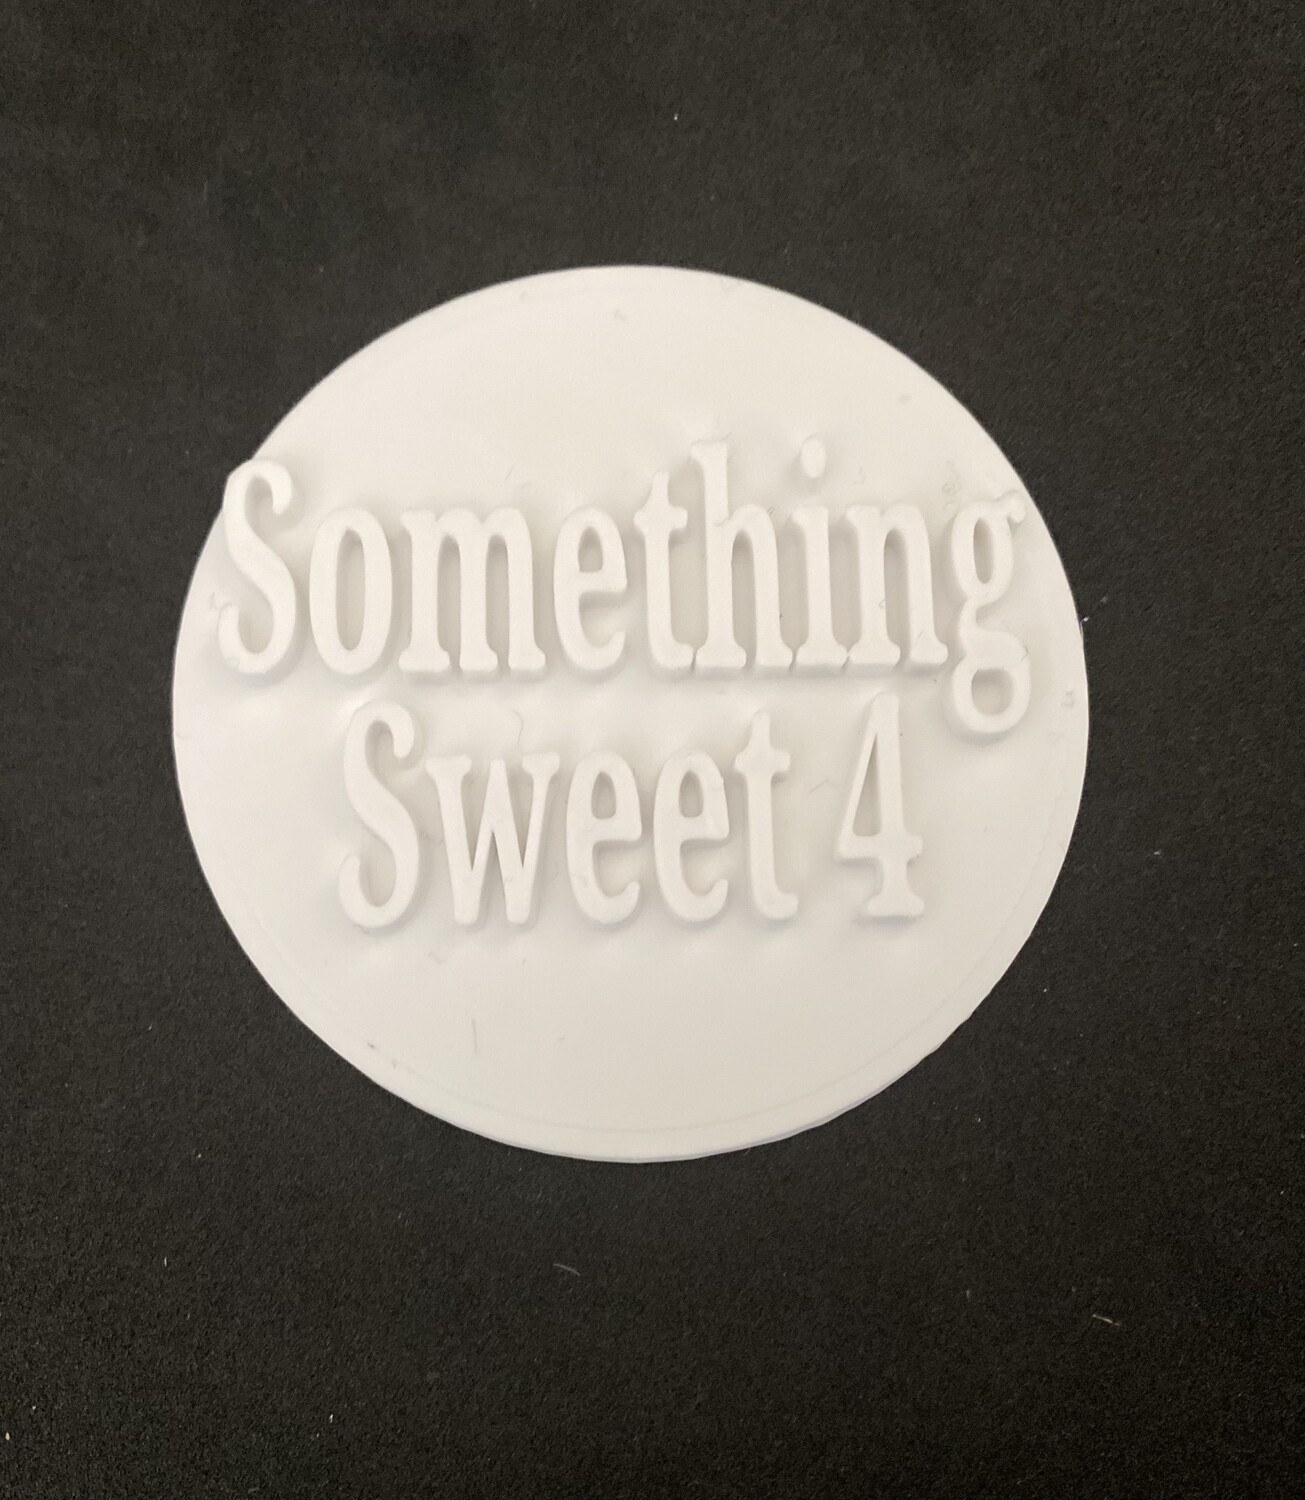 Something sweet 4